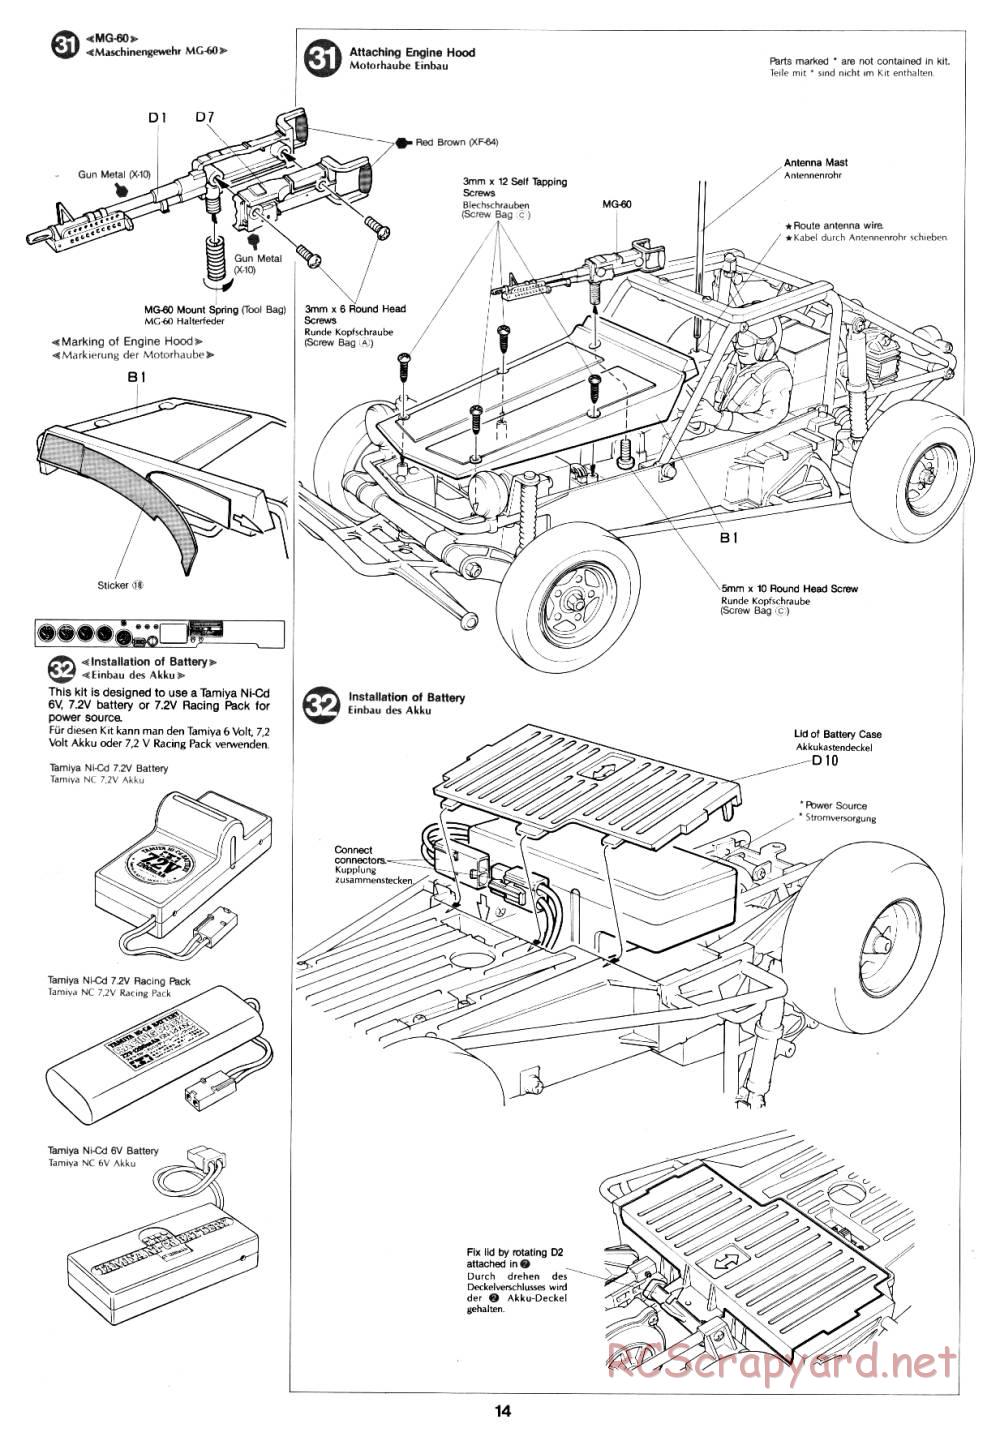 Tamiya - Fast Attack Vehicle - 58046 - Manual - Page 14